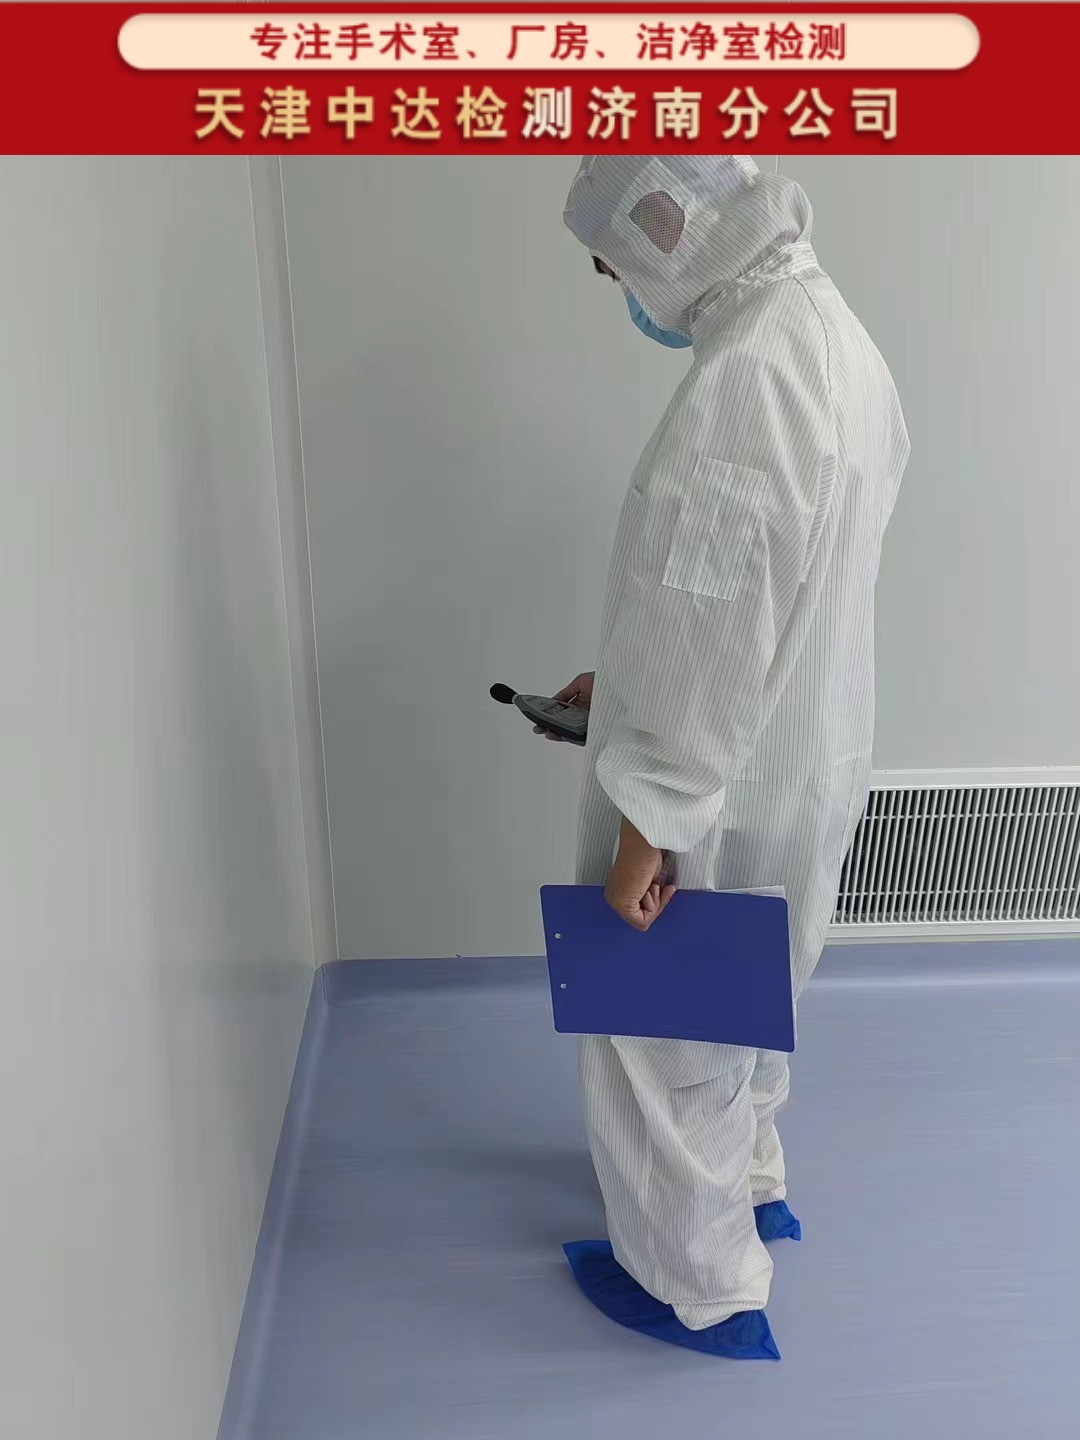 青岛市北区百级/千级/万级手术室洁净及细菌检测项目-天津中达检测济南分公司